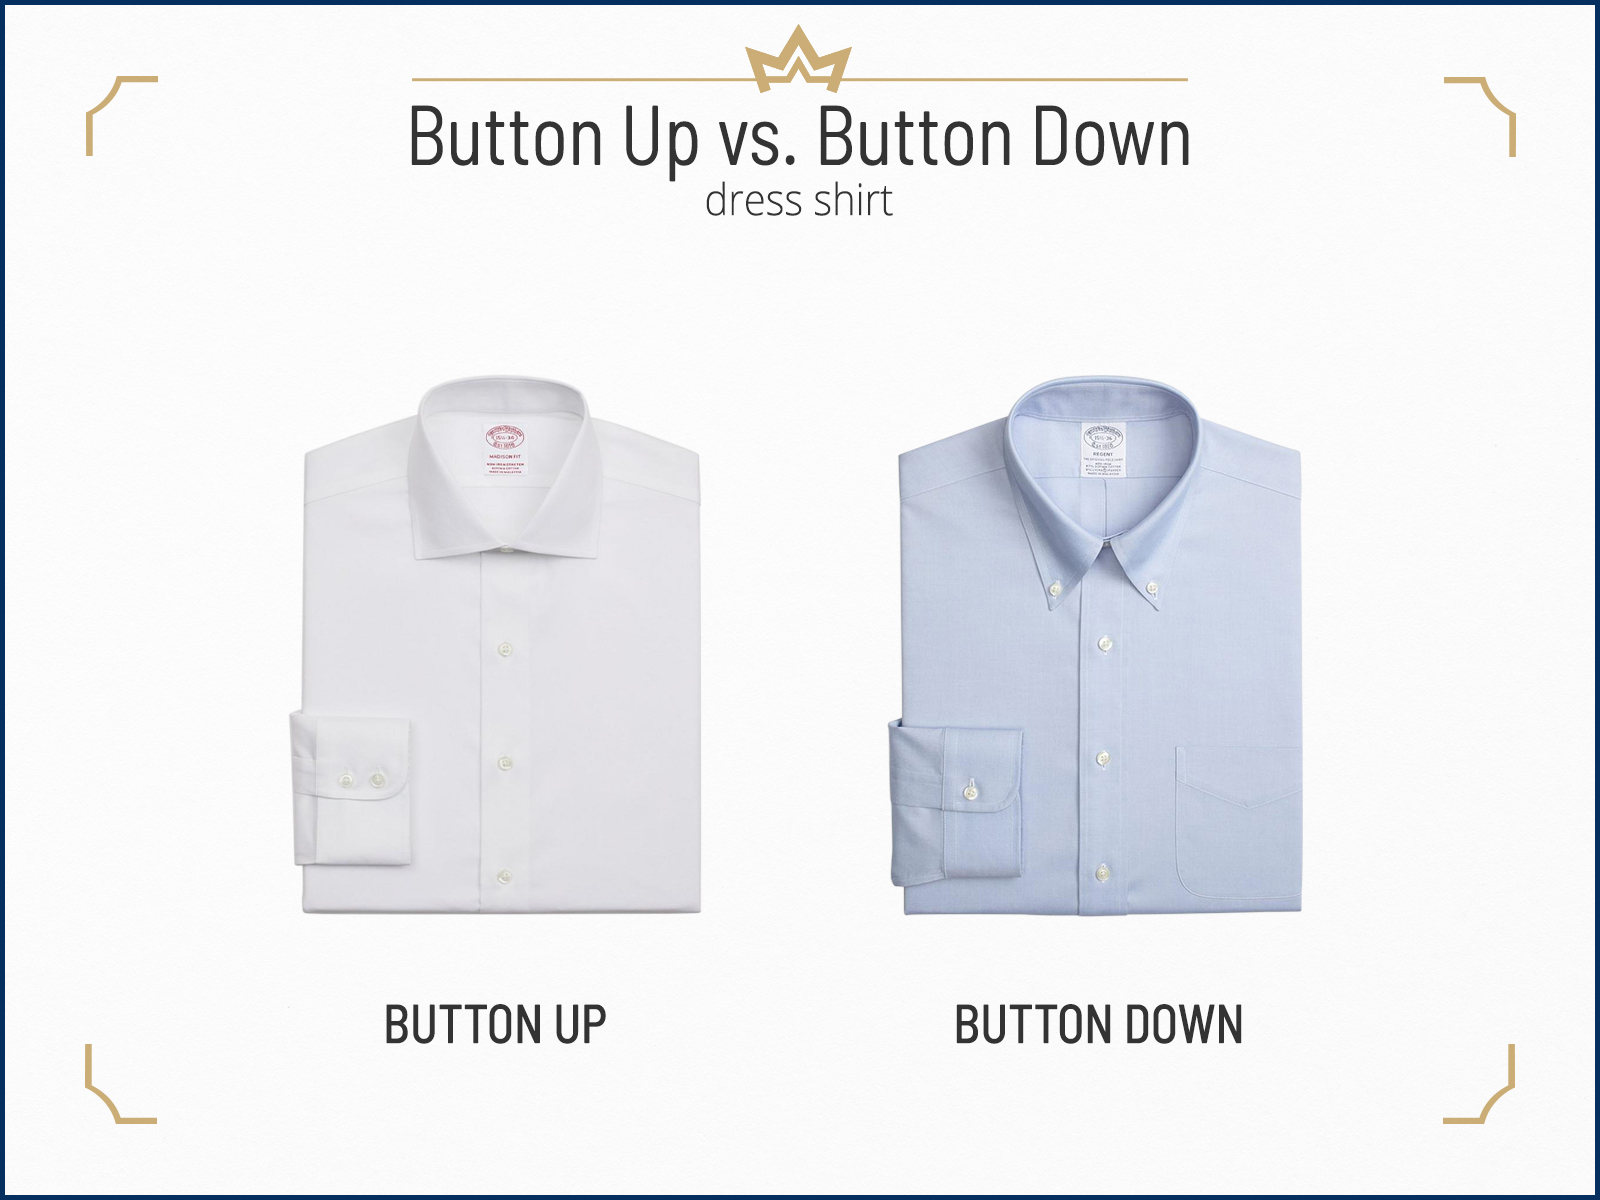 Button-up vs. button-down dress shirt